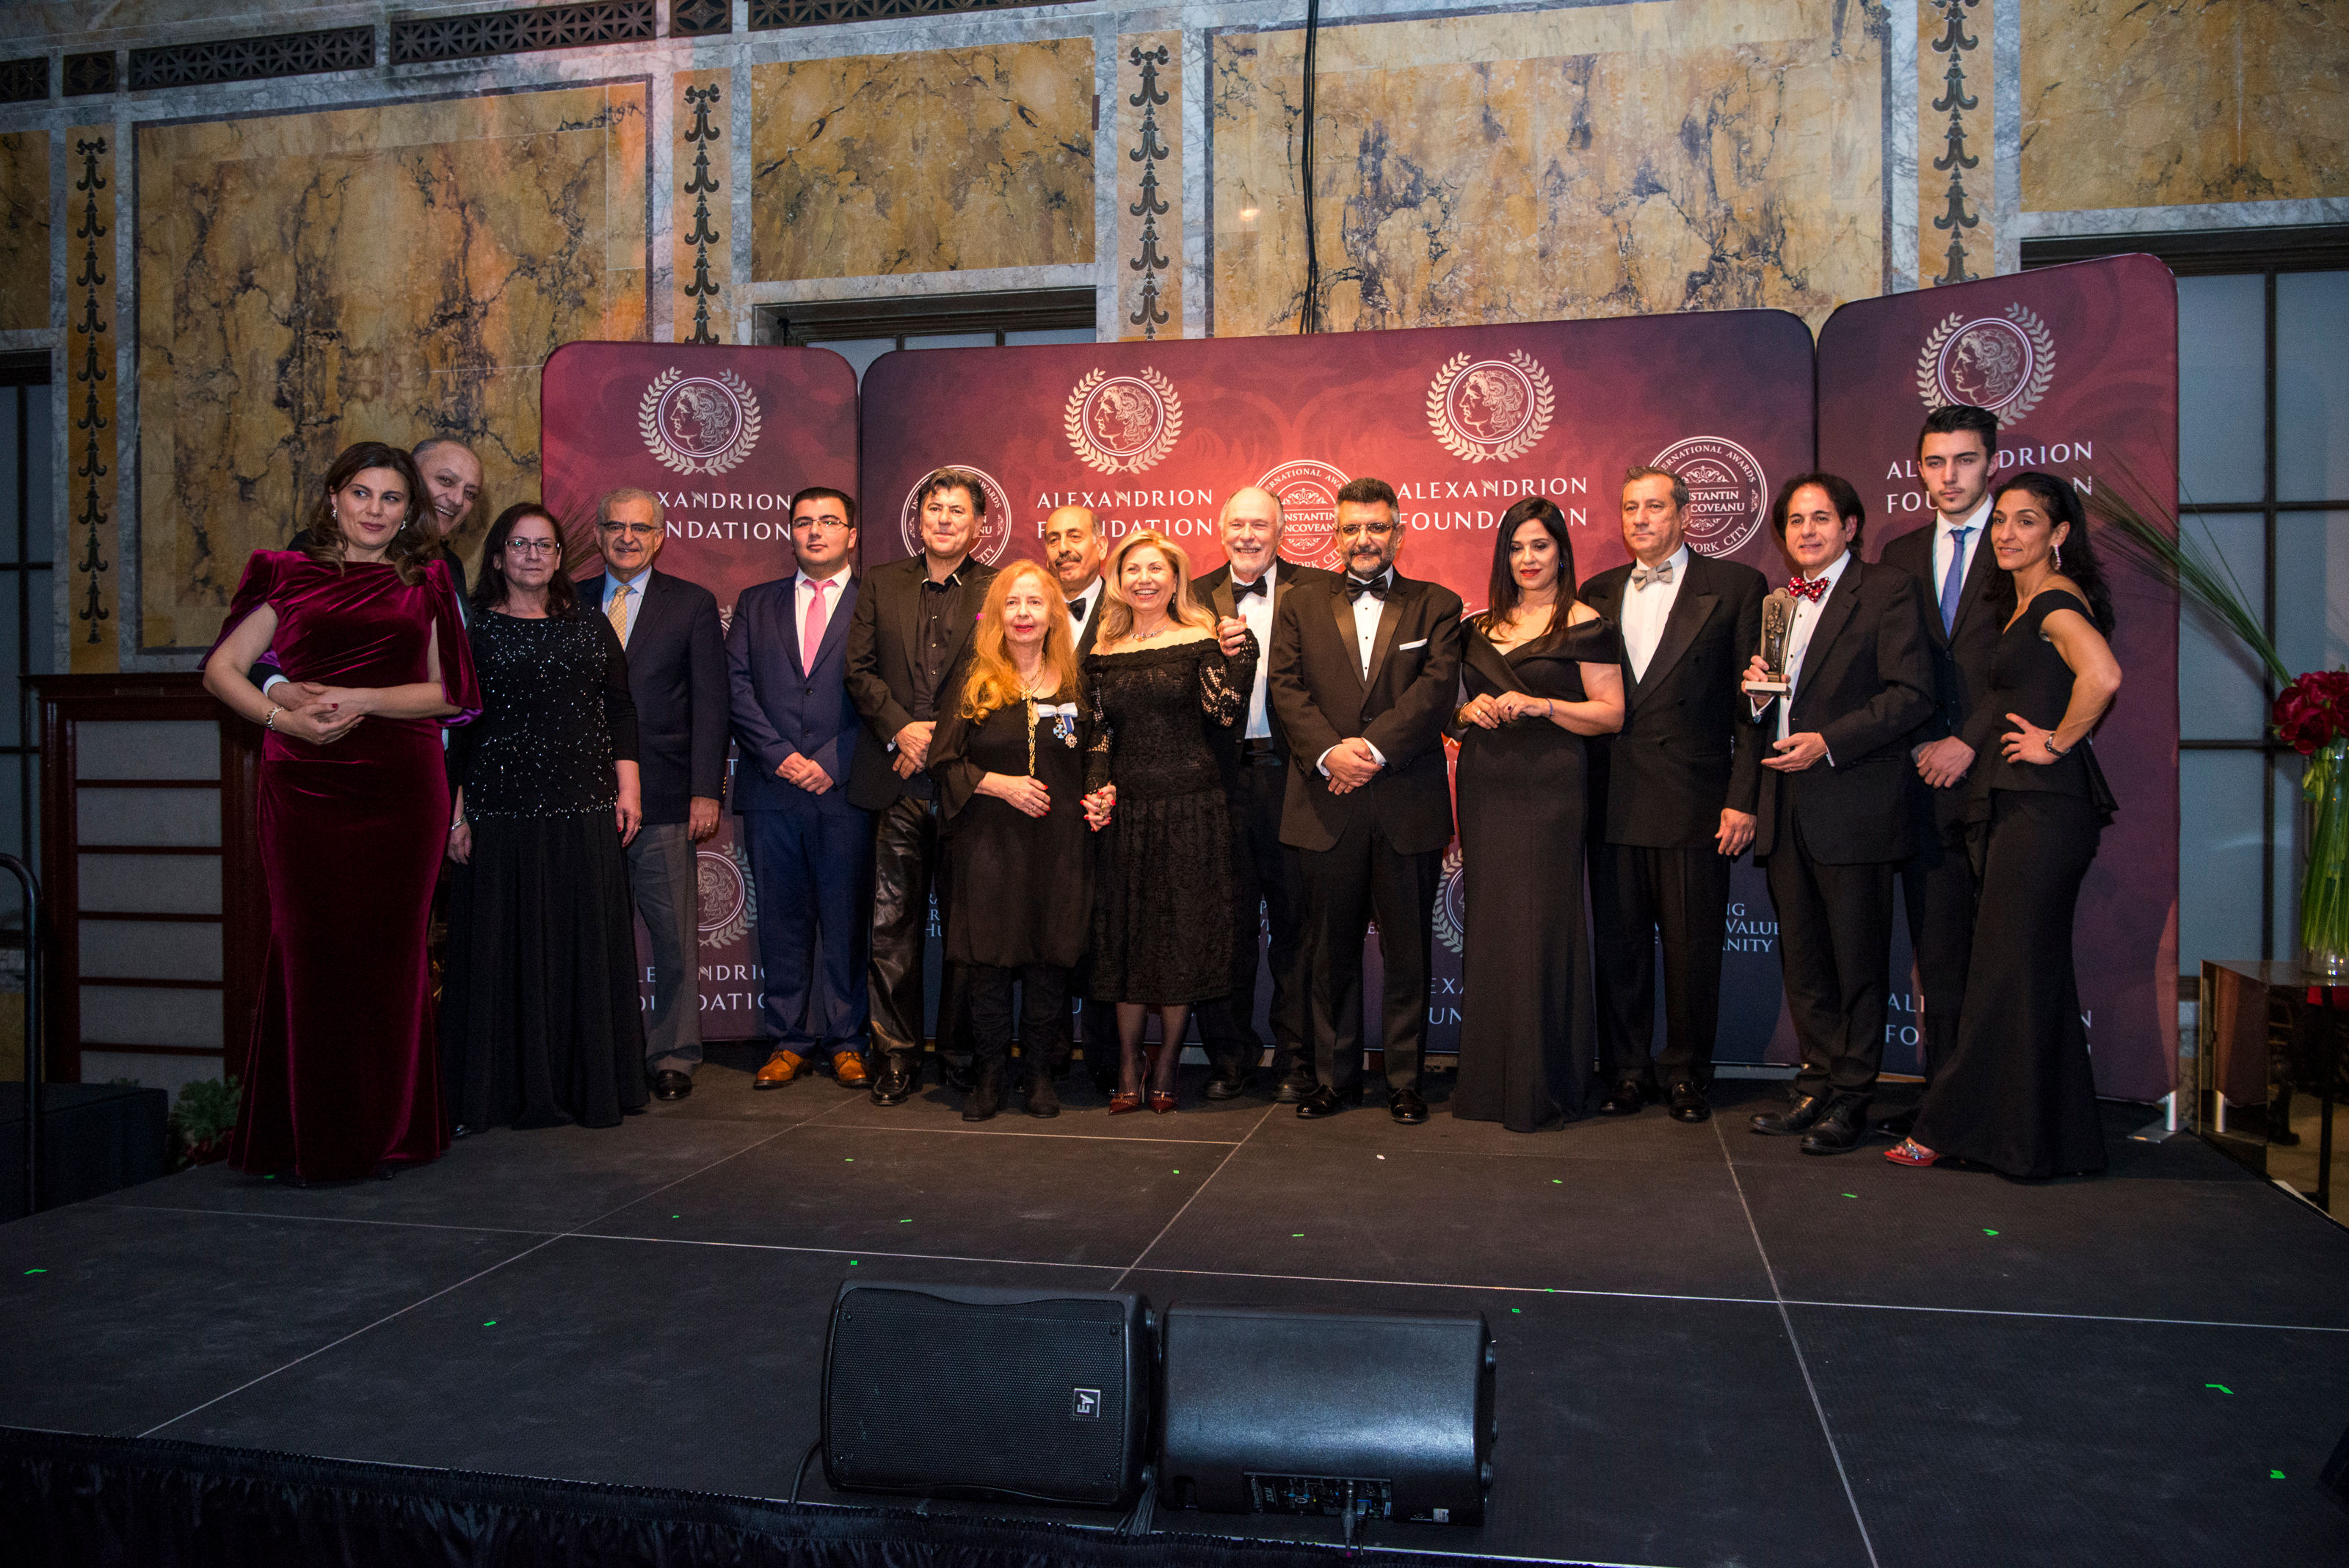 Fundația Alexandrion a decernat pentru prima dată Premiile Internaționale Constantin Brâncoveanu în Statele Unite